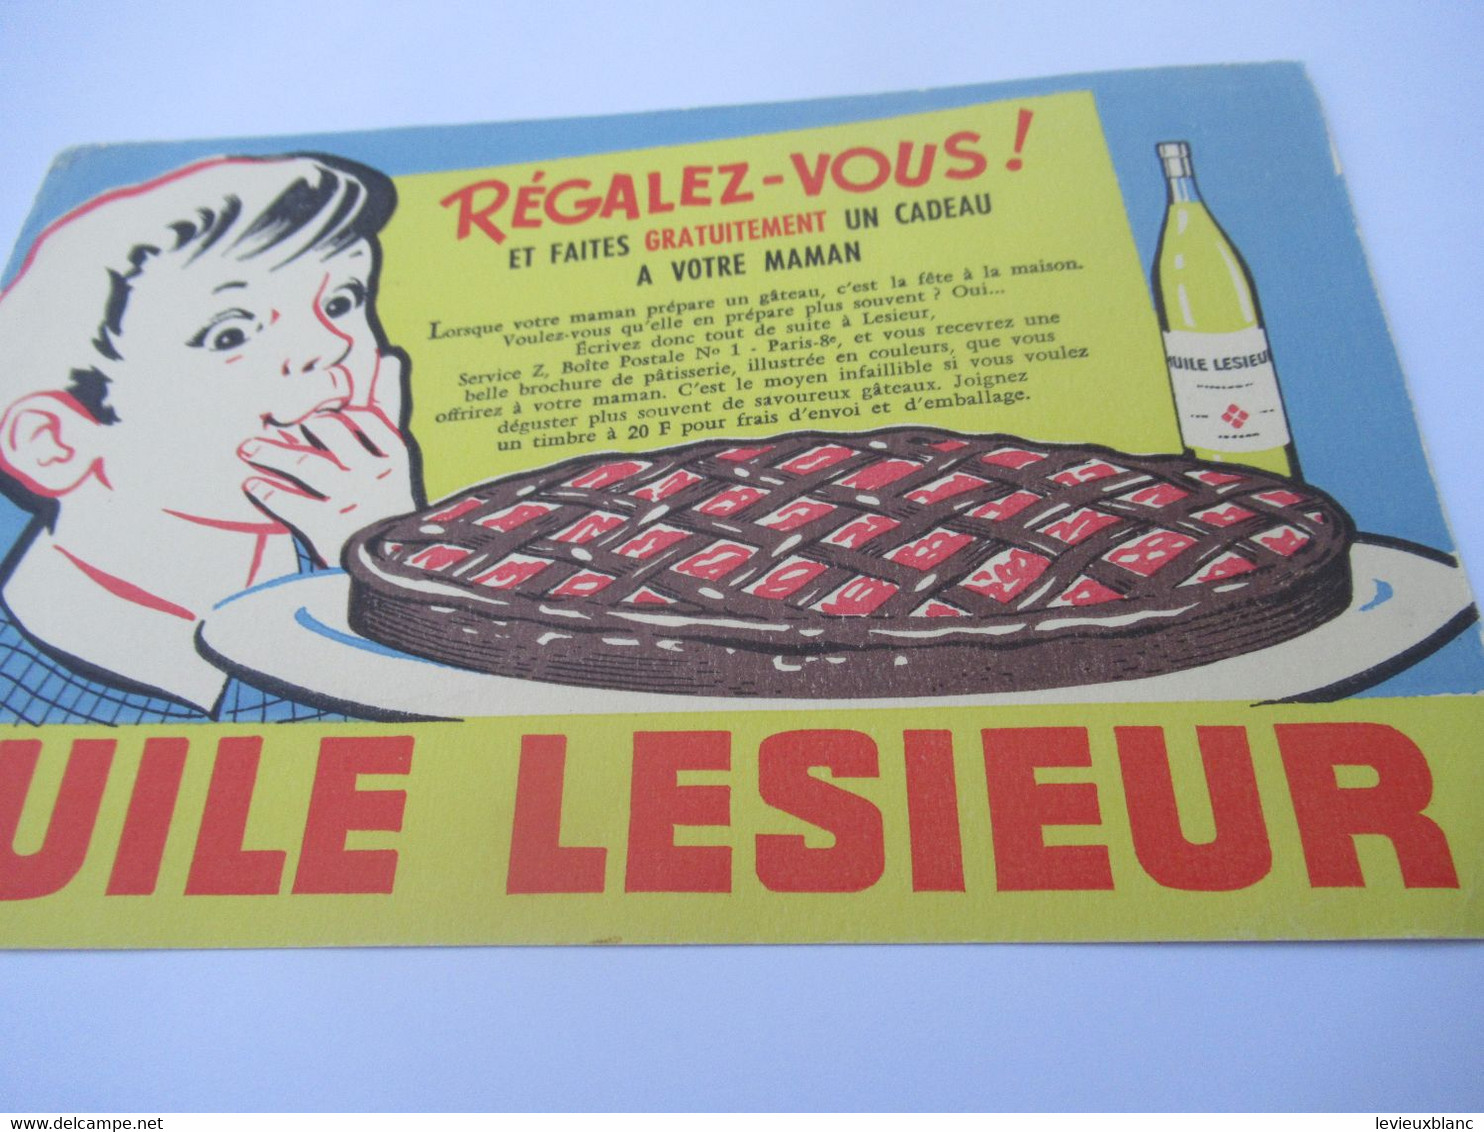 Buvard Publicitaire/Huile  /HUILE LESIEUR/ Régalez-vous/Faire Un Gâteau /Alexandre/ Vers 1950-1960             BUV644 - Produits Laitiers